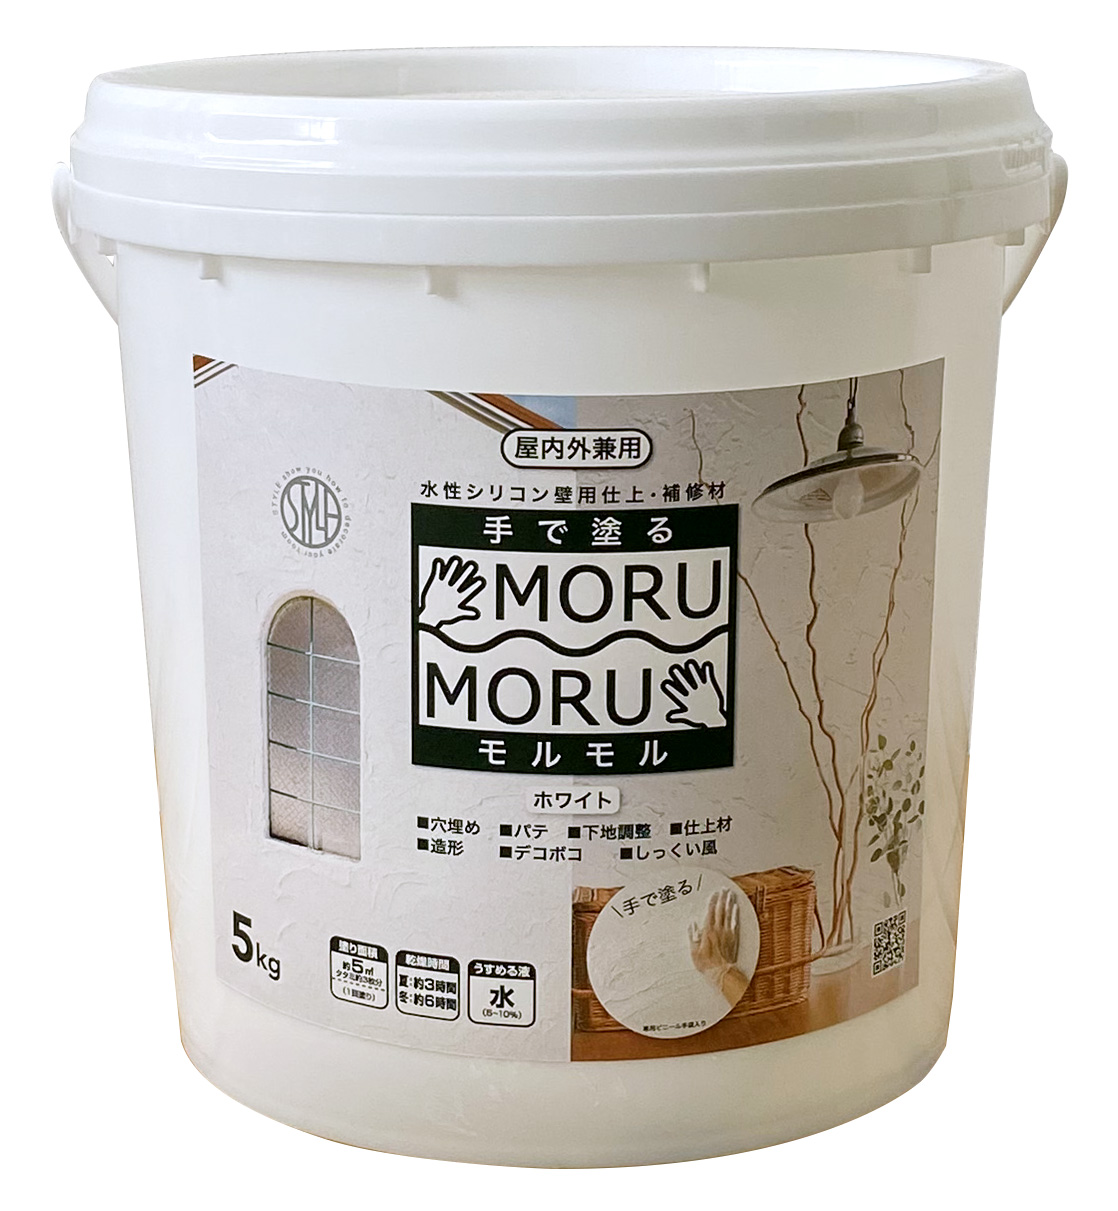 手で塗る 屋内外対応 しっくい風塗料STYLE MORUMORU モルモル 5kg ホワイト